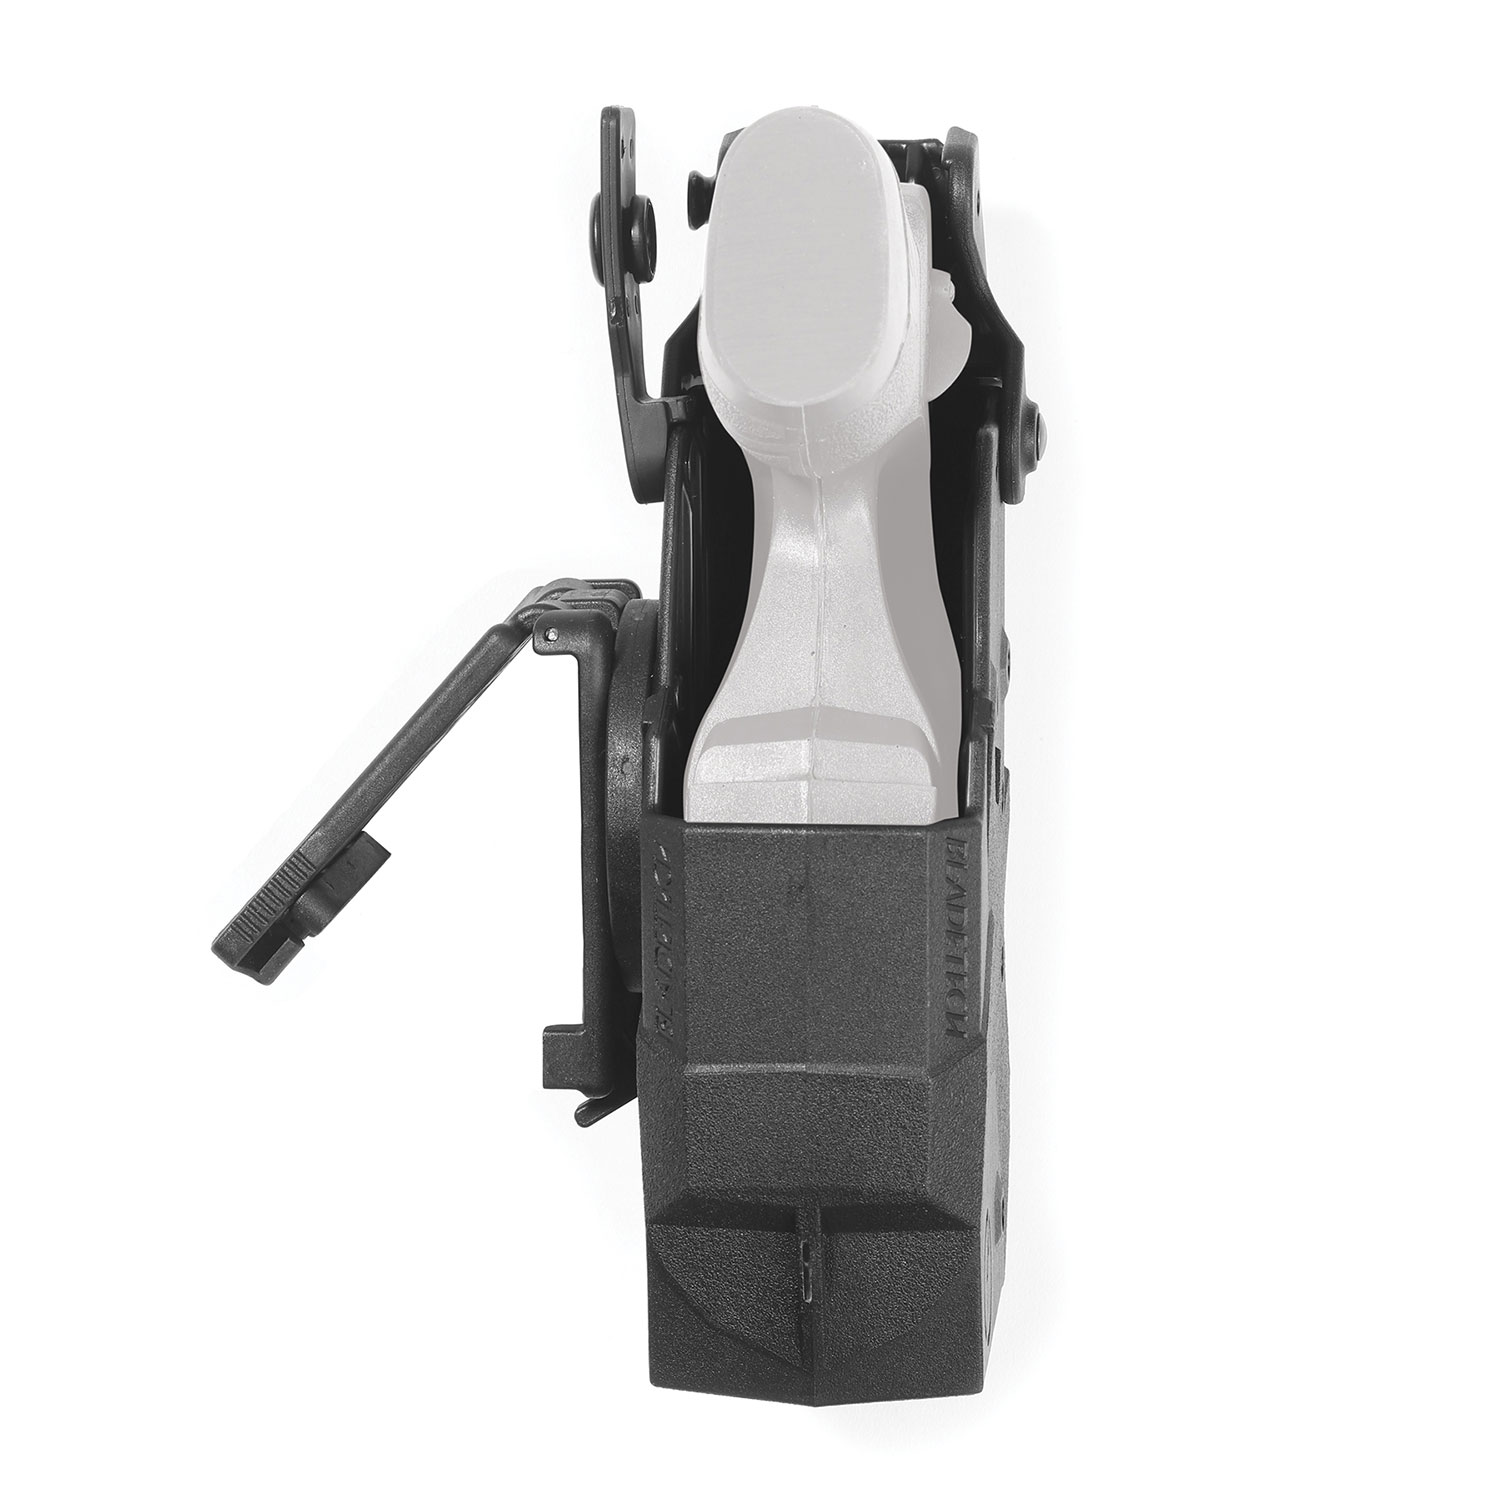 Blade-tech Taser X2 Holster with Tek Lok Attachment